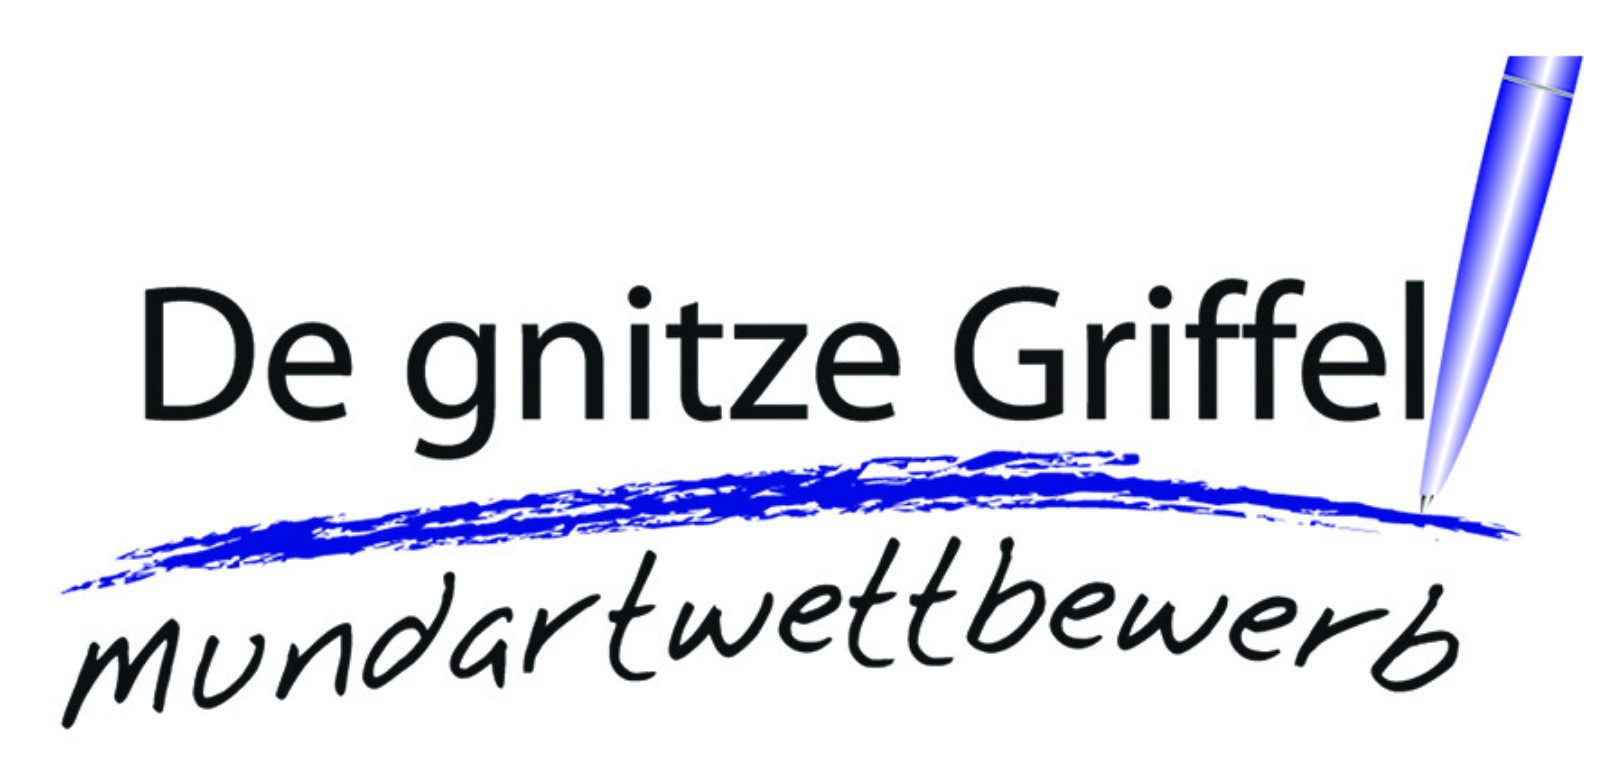 Kulturerhaltung in Baden – Mundartwettbewerb „De gnitze Griffel“ ausgeschrieben